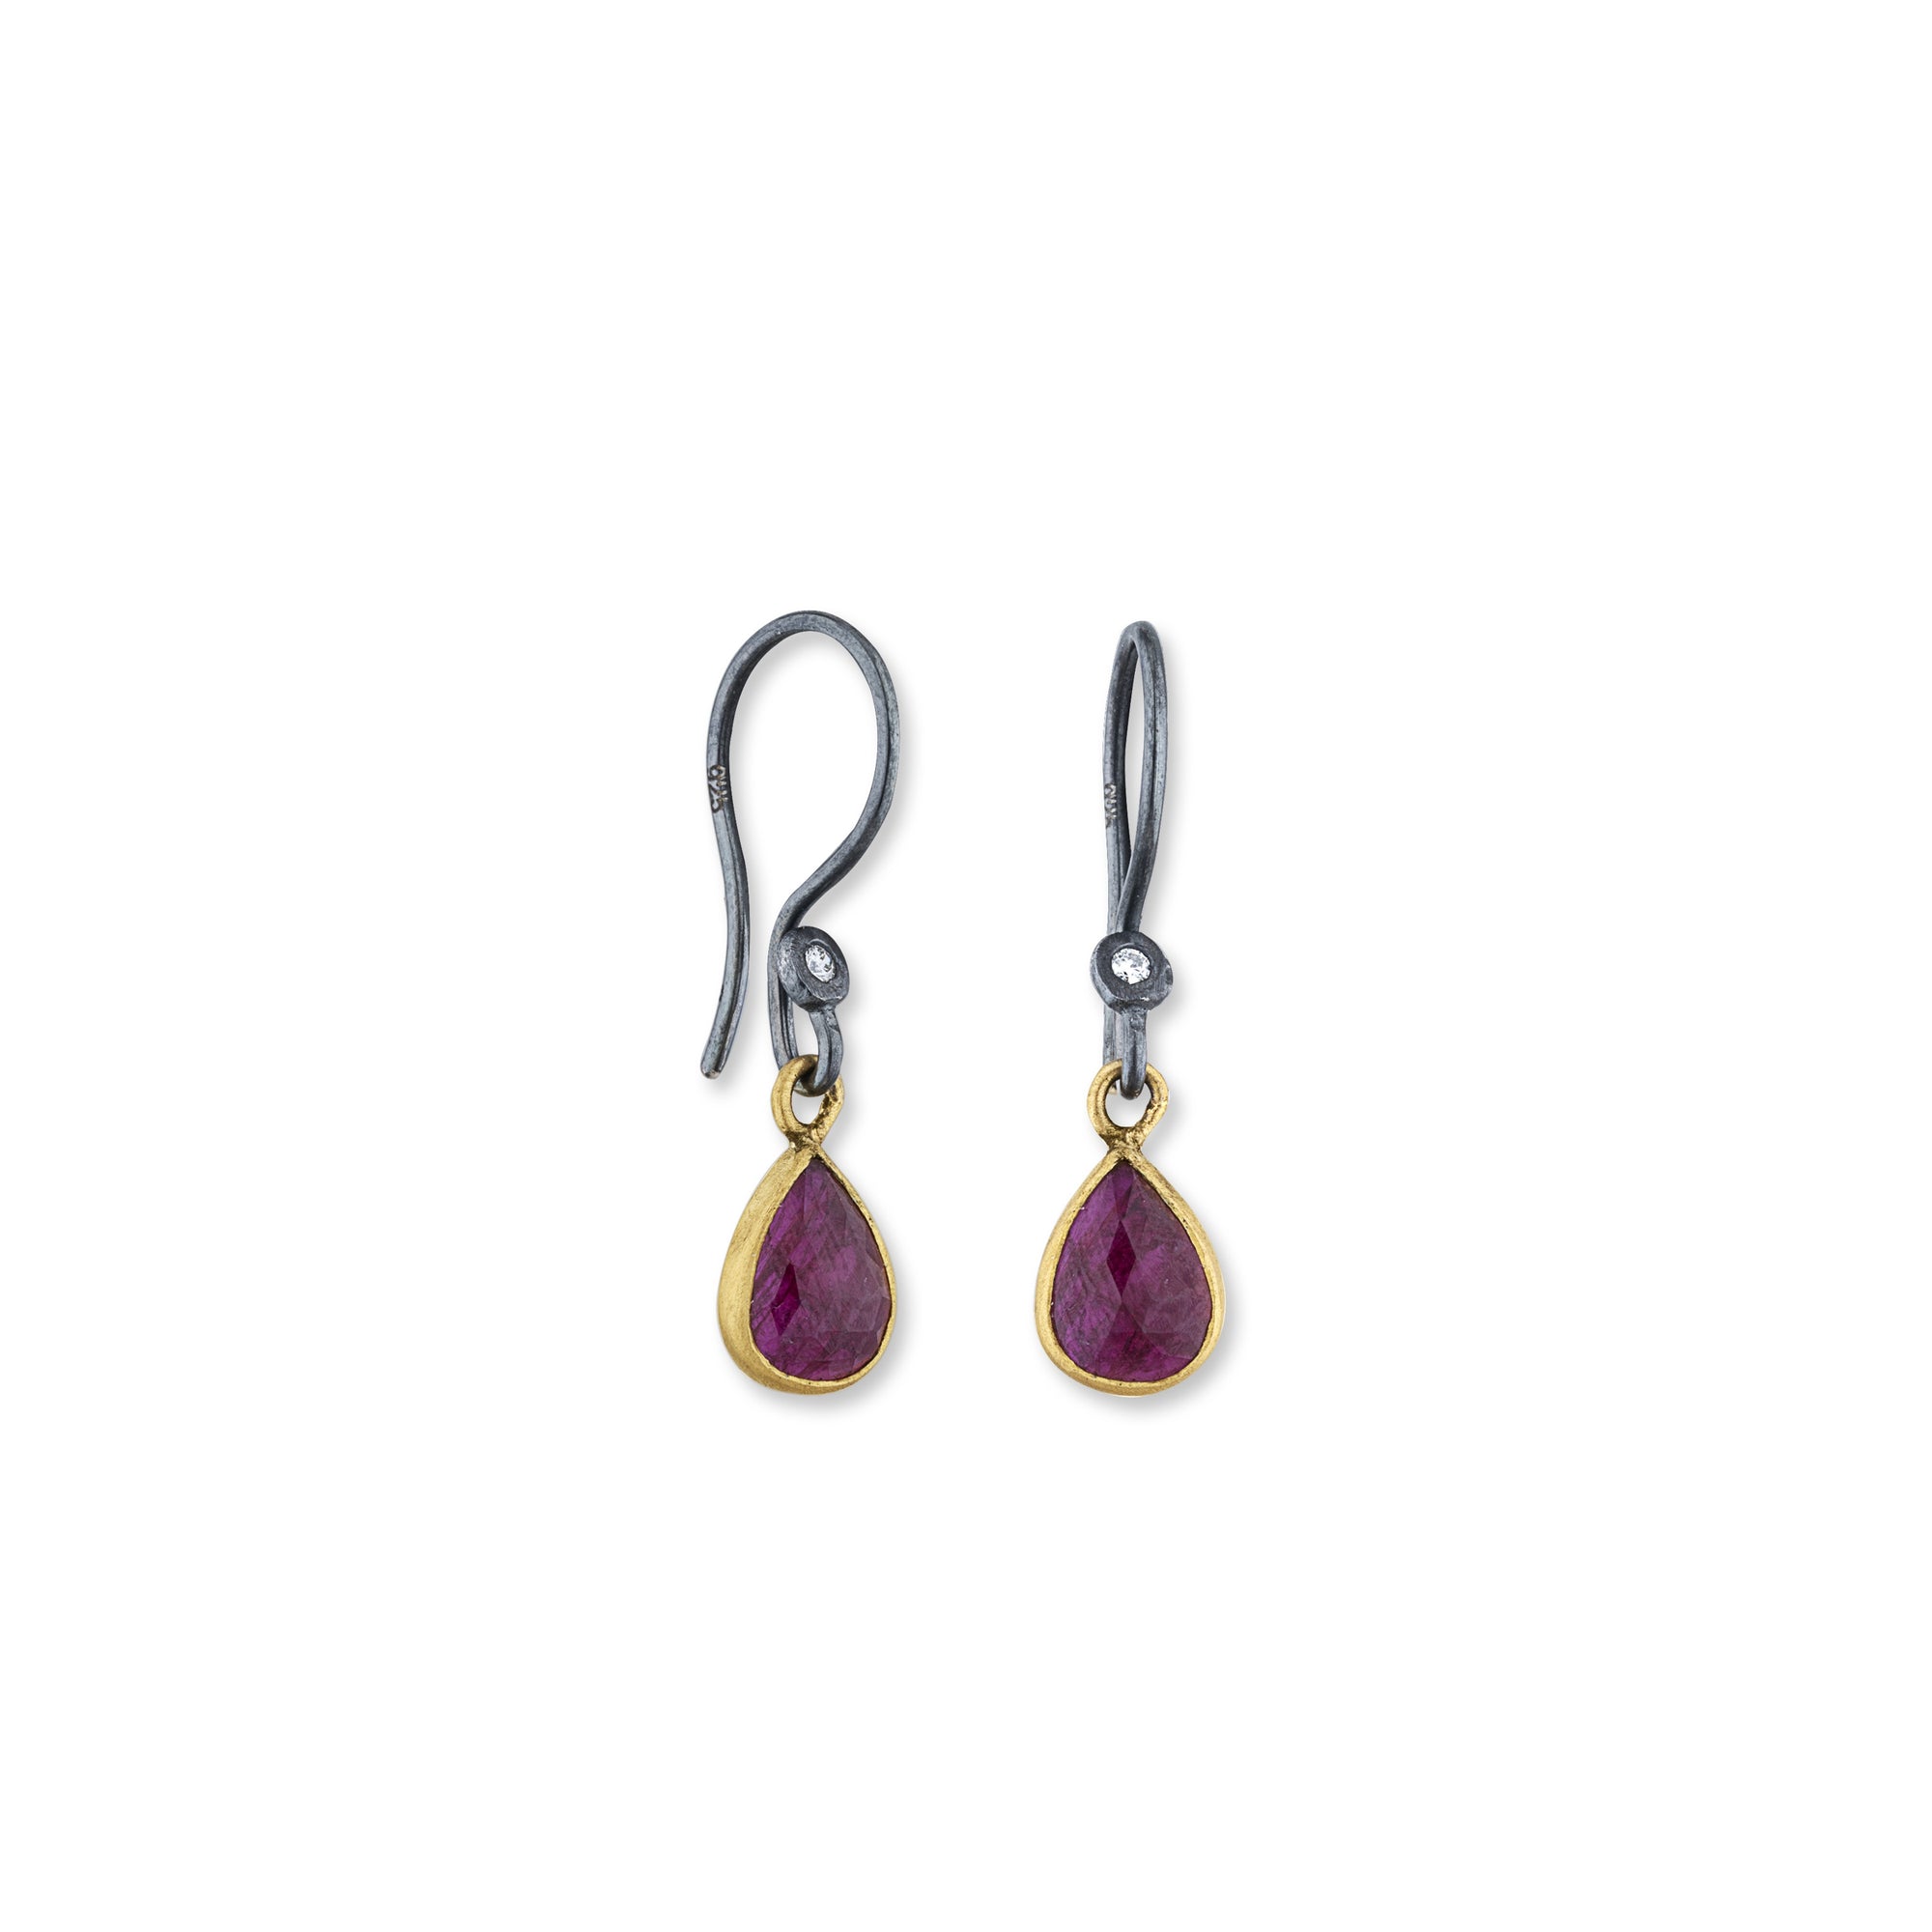 Lika Behar 24K Gold & Oxidized Sterling Silver Ruby Earrings